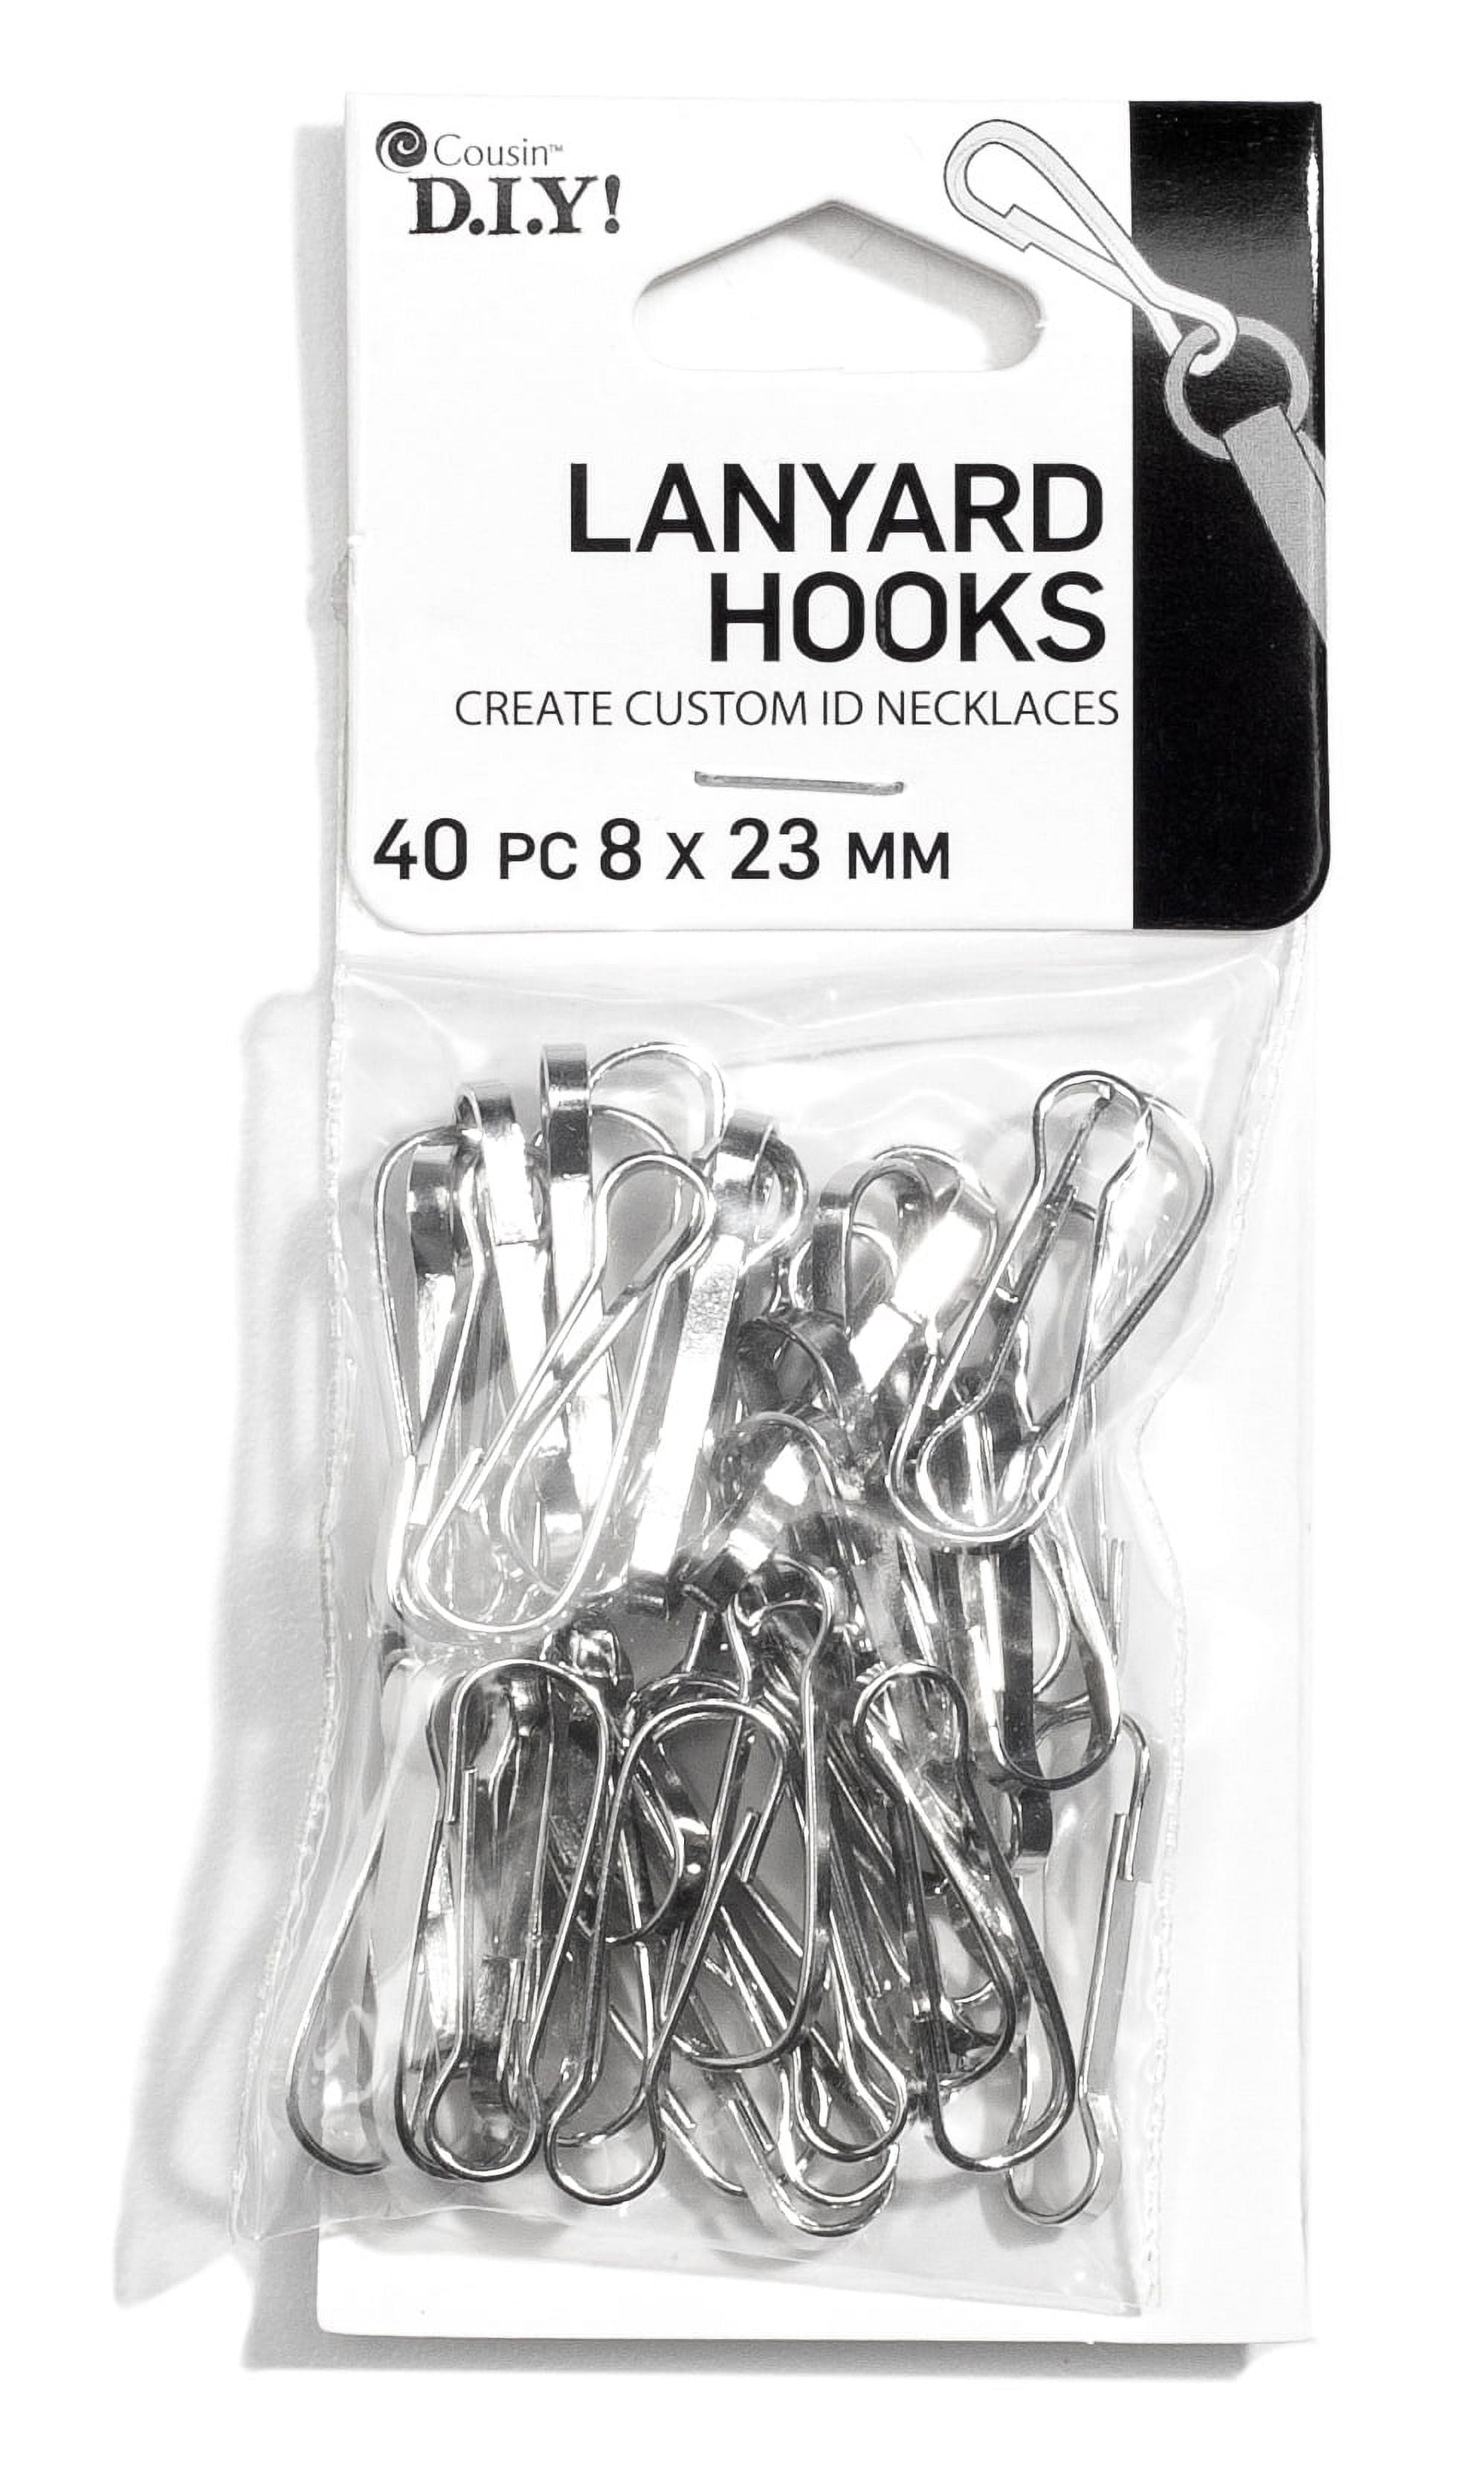 17x6.6mm Steel Silver Lanyard Hooks